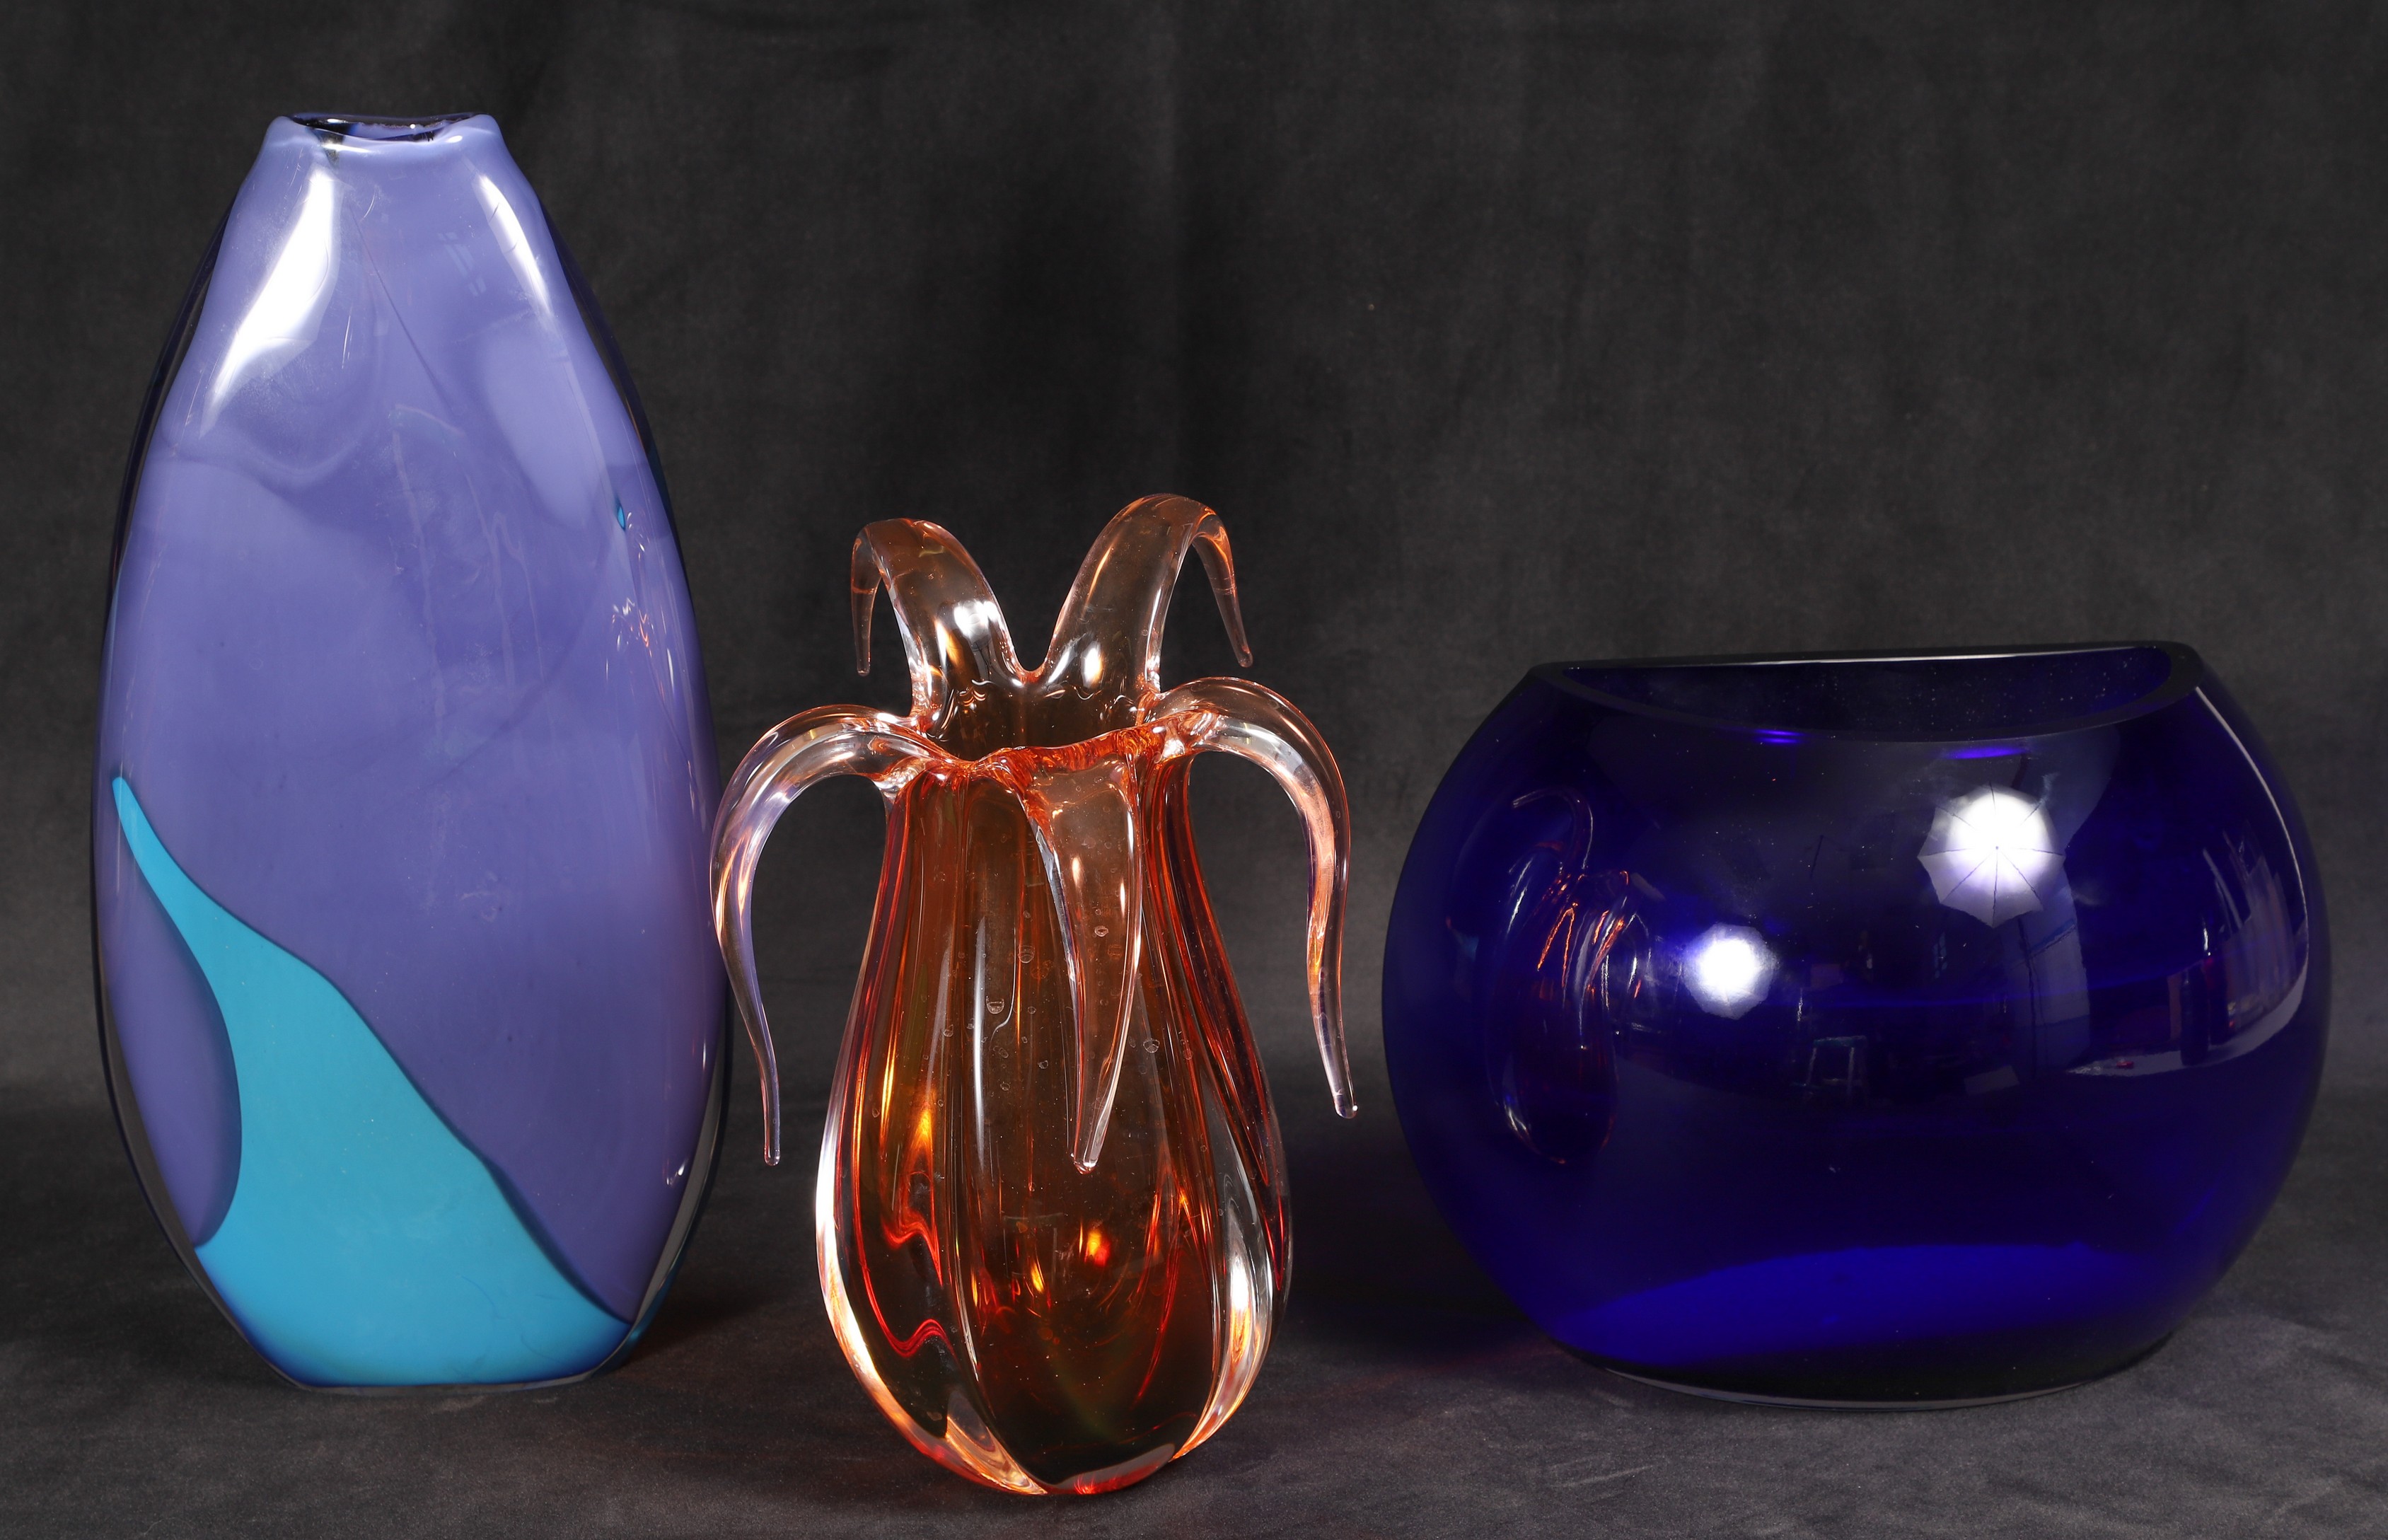 (3) Art glass vases, c/o blue ovoid